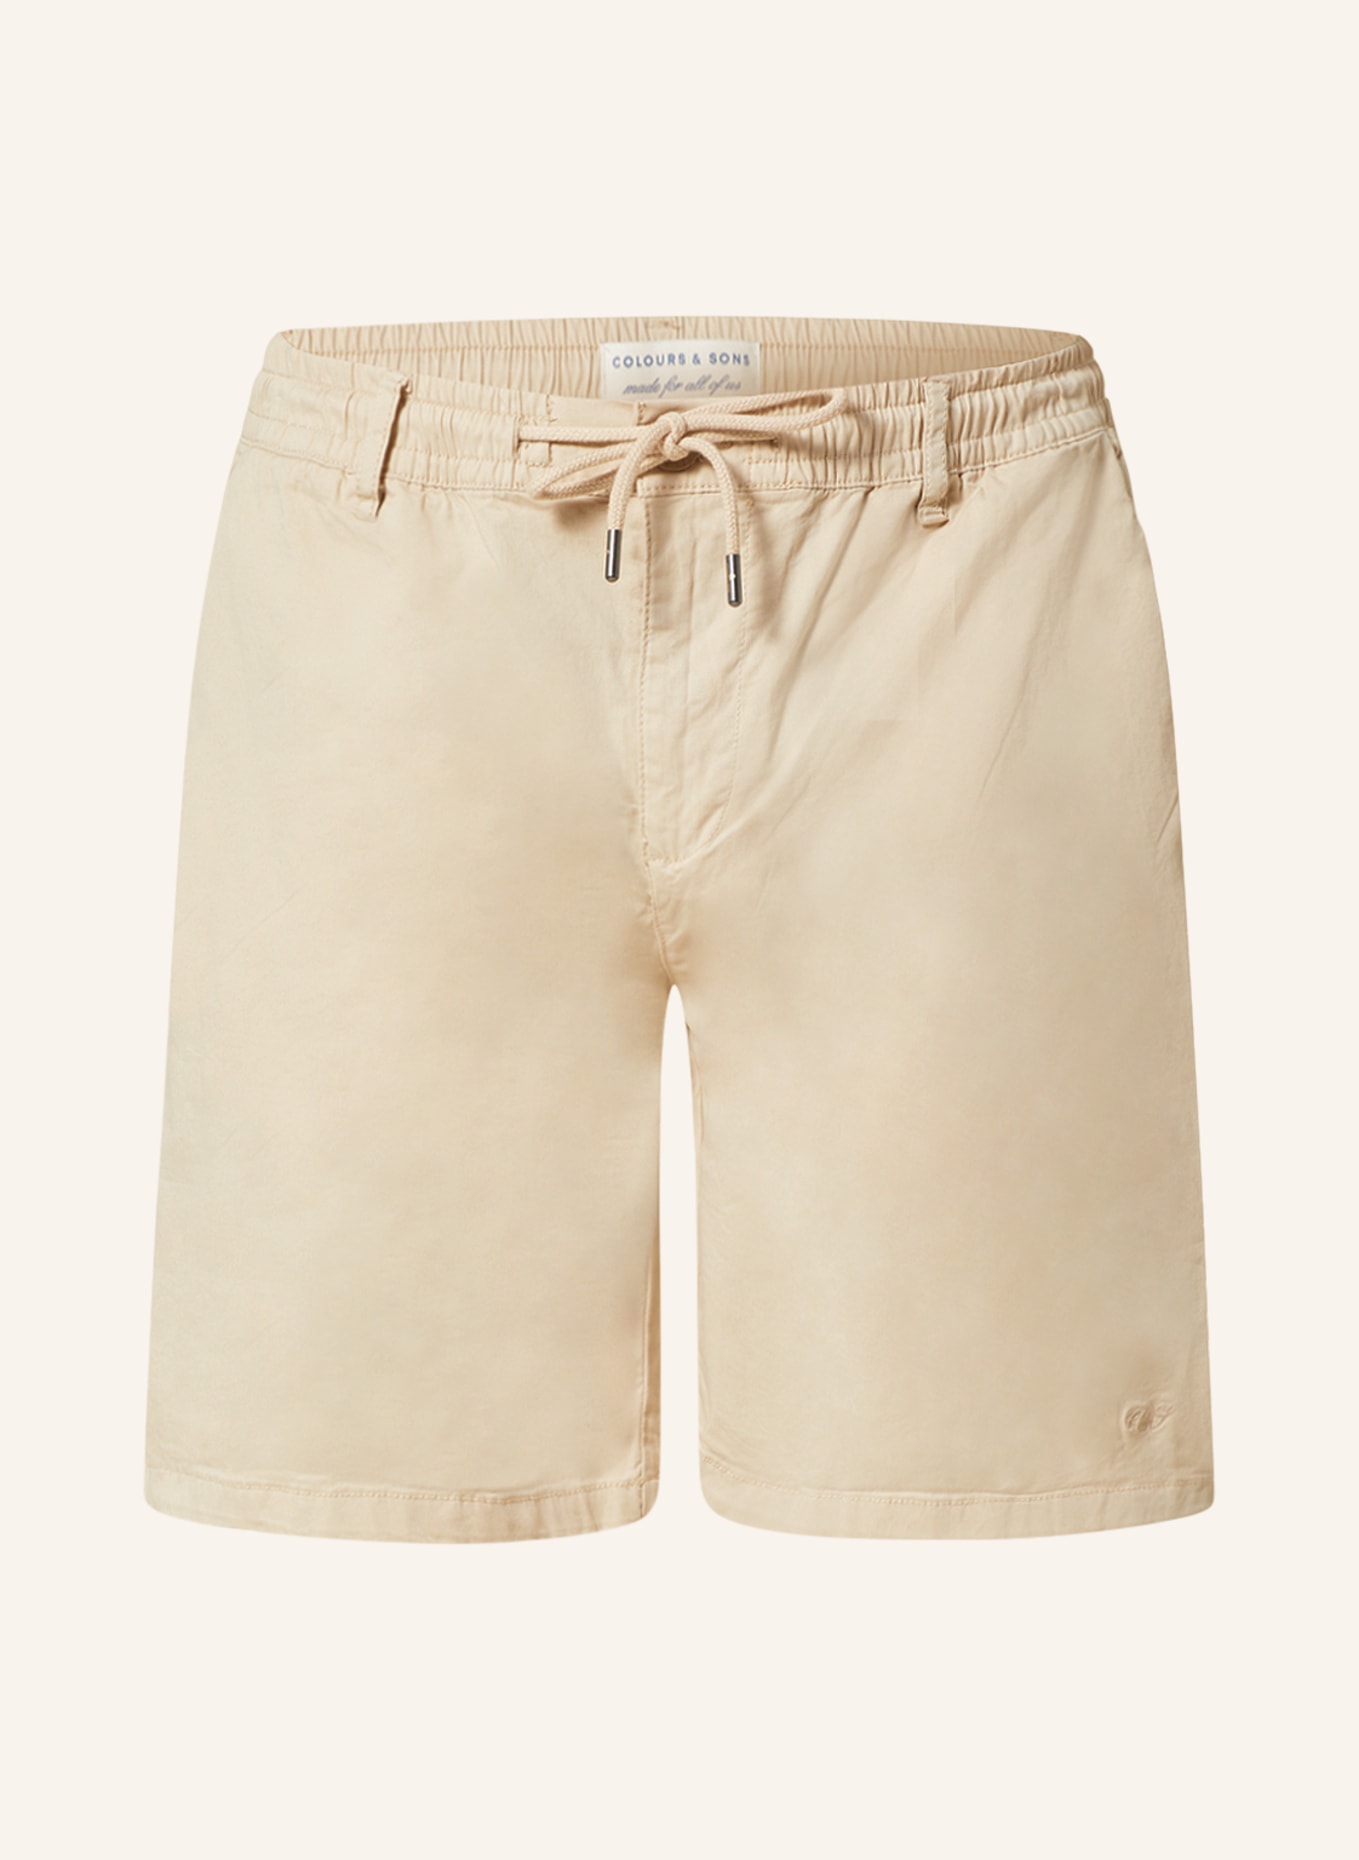 COLOURS & SONS Shorts, Color: BEIGE (Image 1)